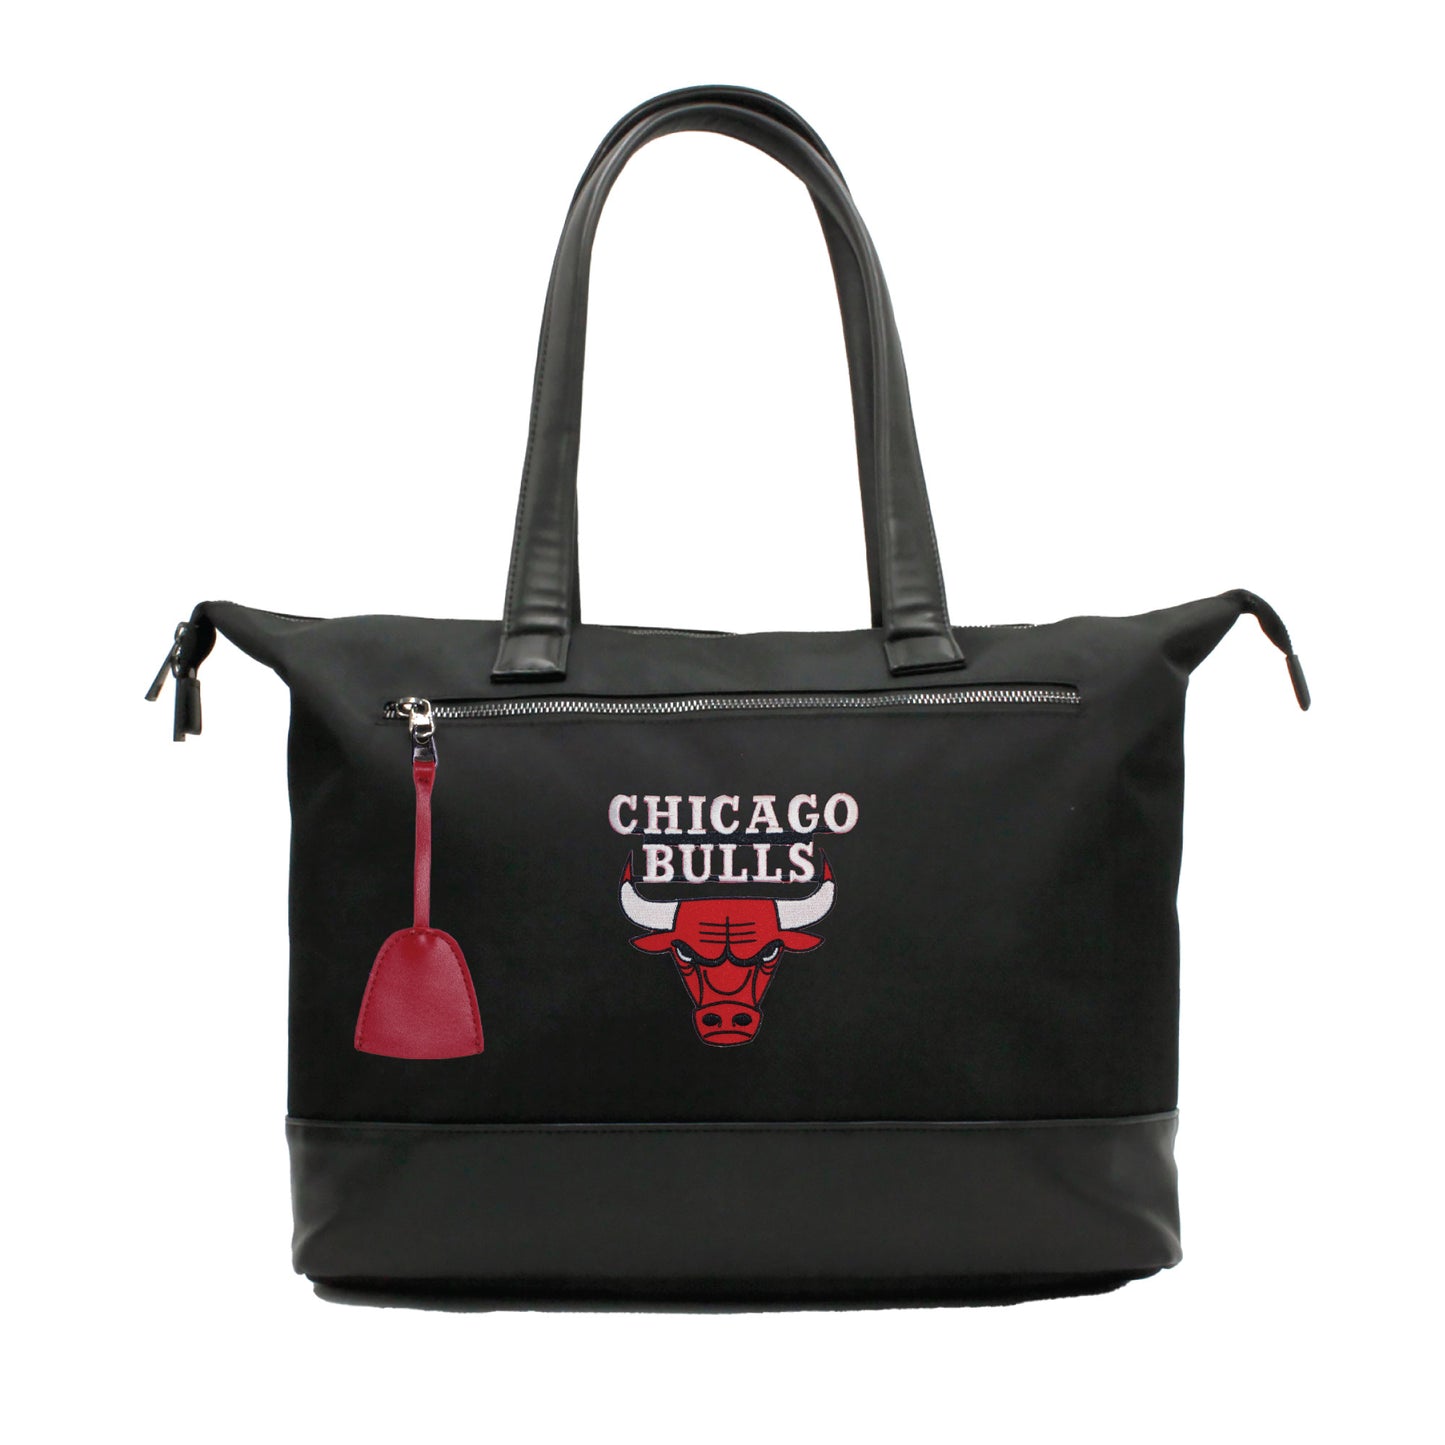 Chicago Bulls Premium Laptop Tote Bag